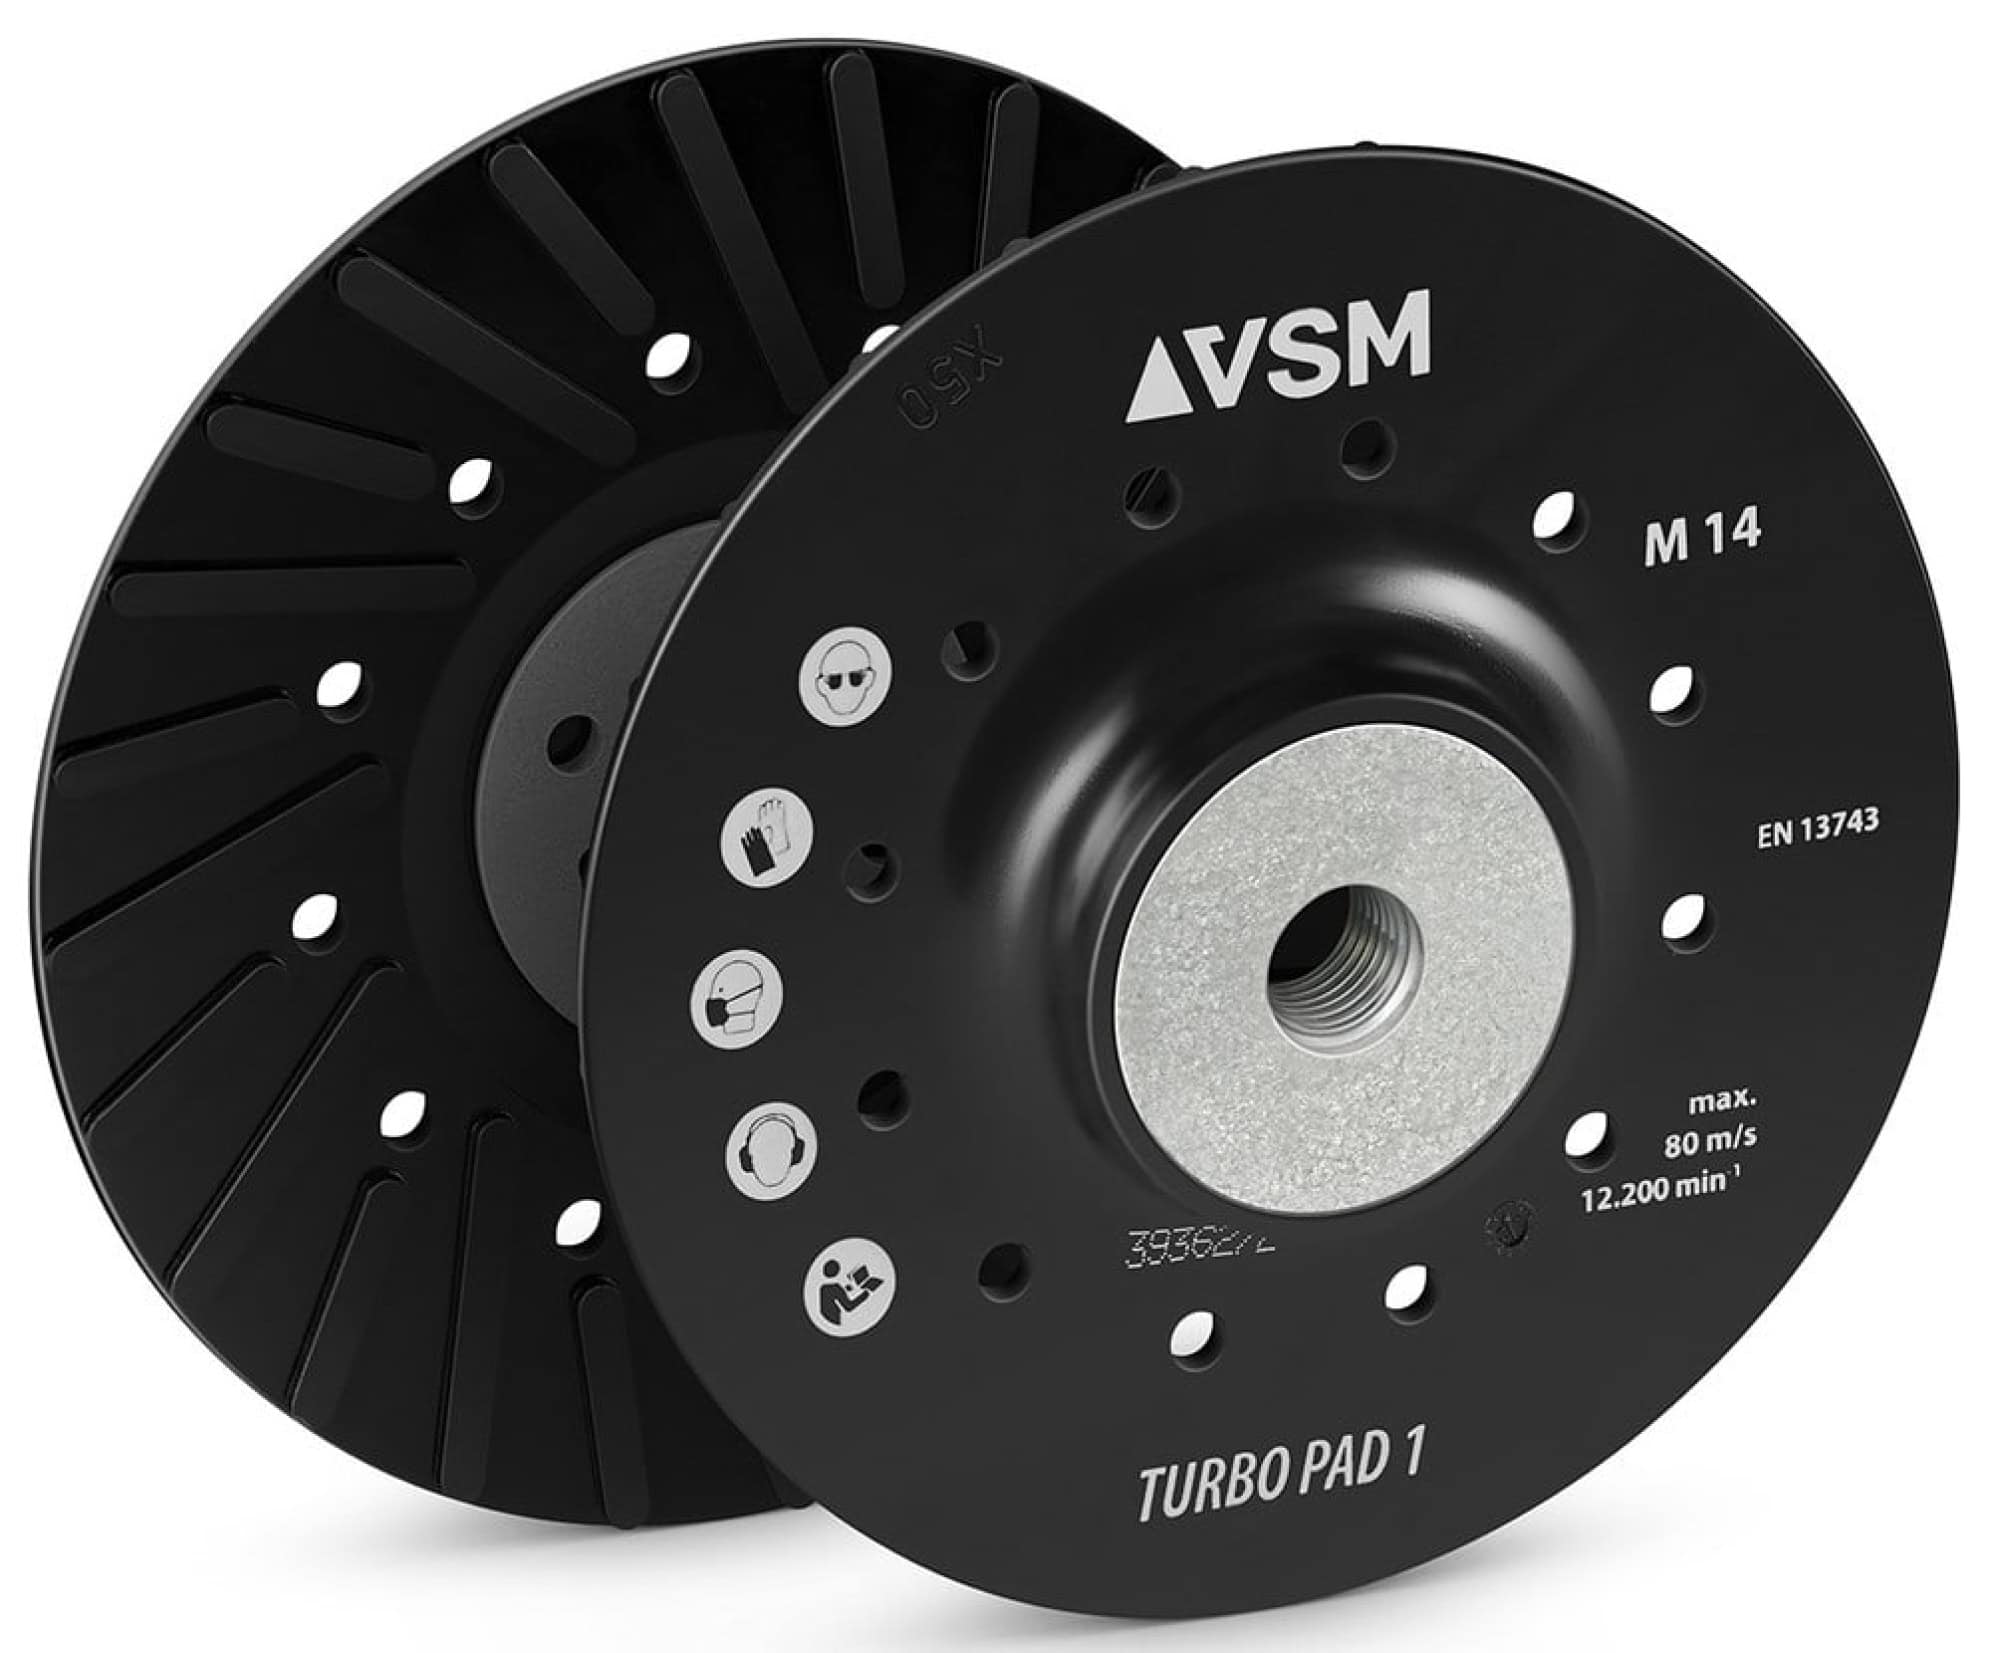 VSM TURBO PAD 1 731302, Ø 115 mm, M14 Gewinde, Schwarz, Hart, Stützteller mit Kühlrippen für Fiberscheibenscheiben mit Ø 22 mm Zentrieransatz für den VSM Winkelschleifer